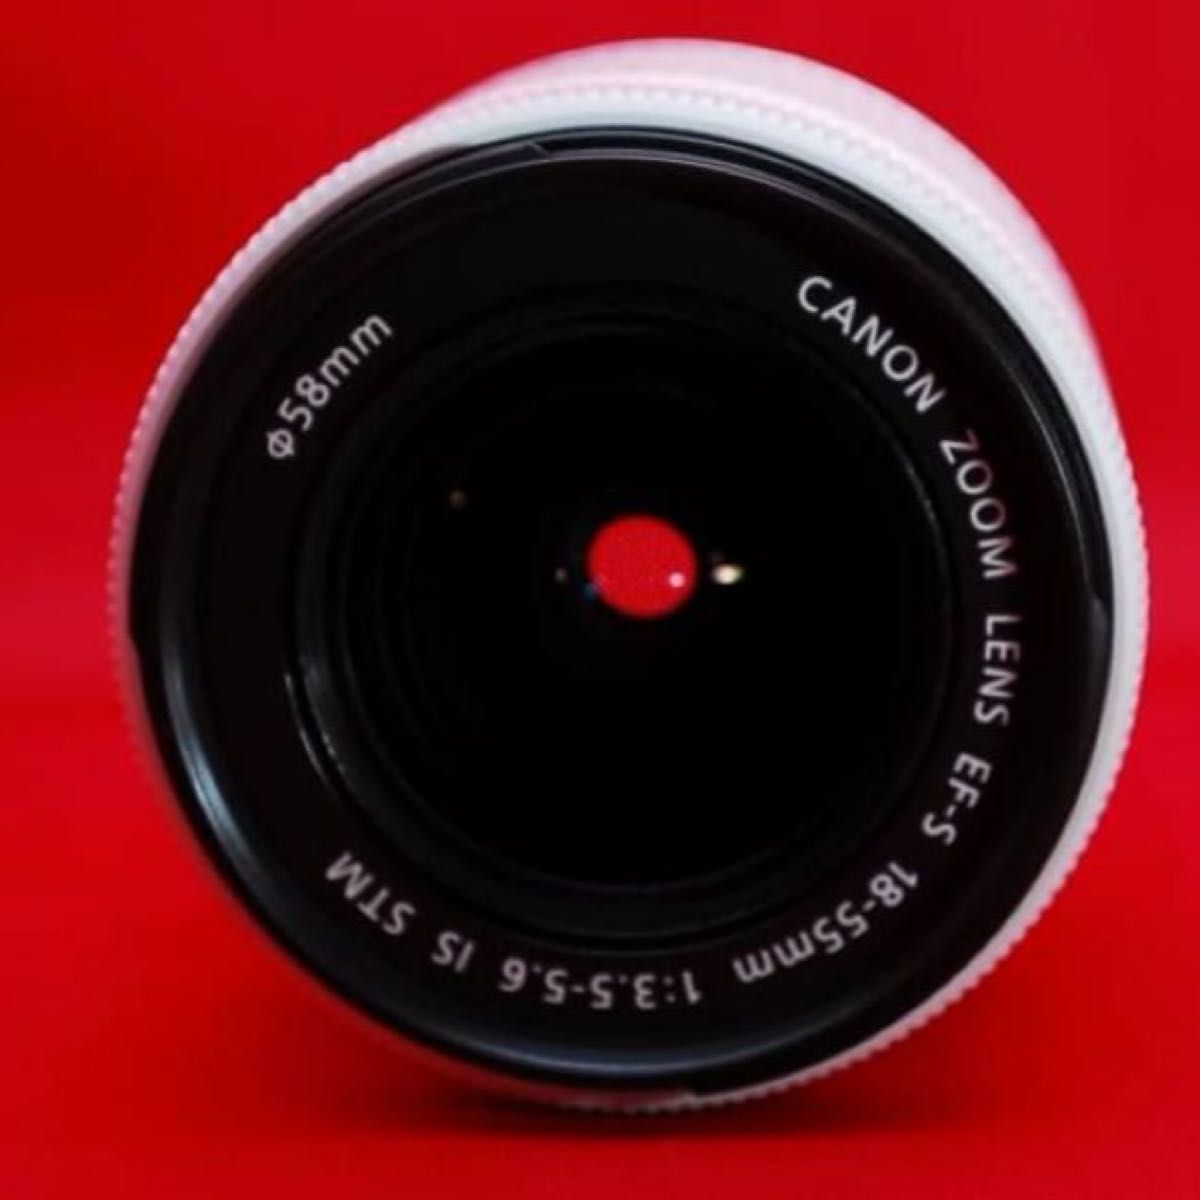 【レンズからオシャレに！】Canon lens EF-S f3.5-5.6 is STM 白ボディ　レアレンズ　限定1点